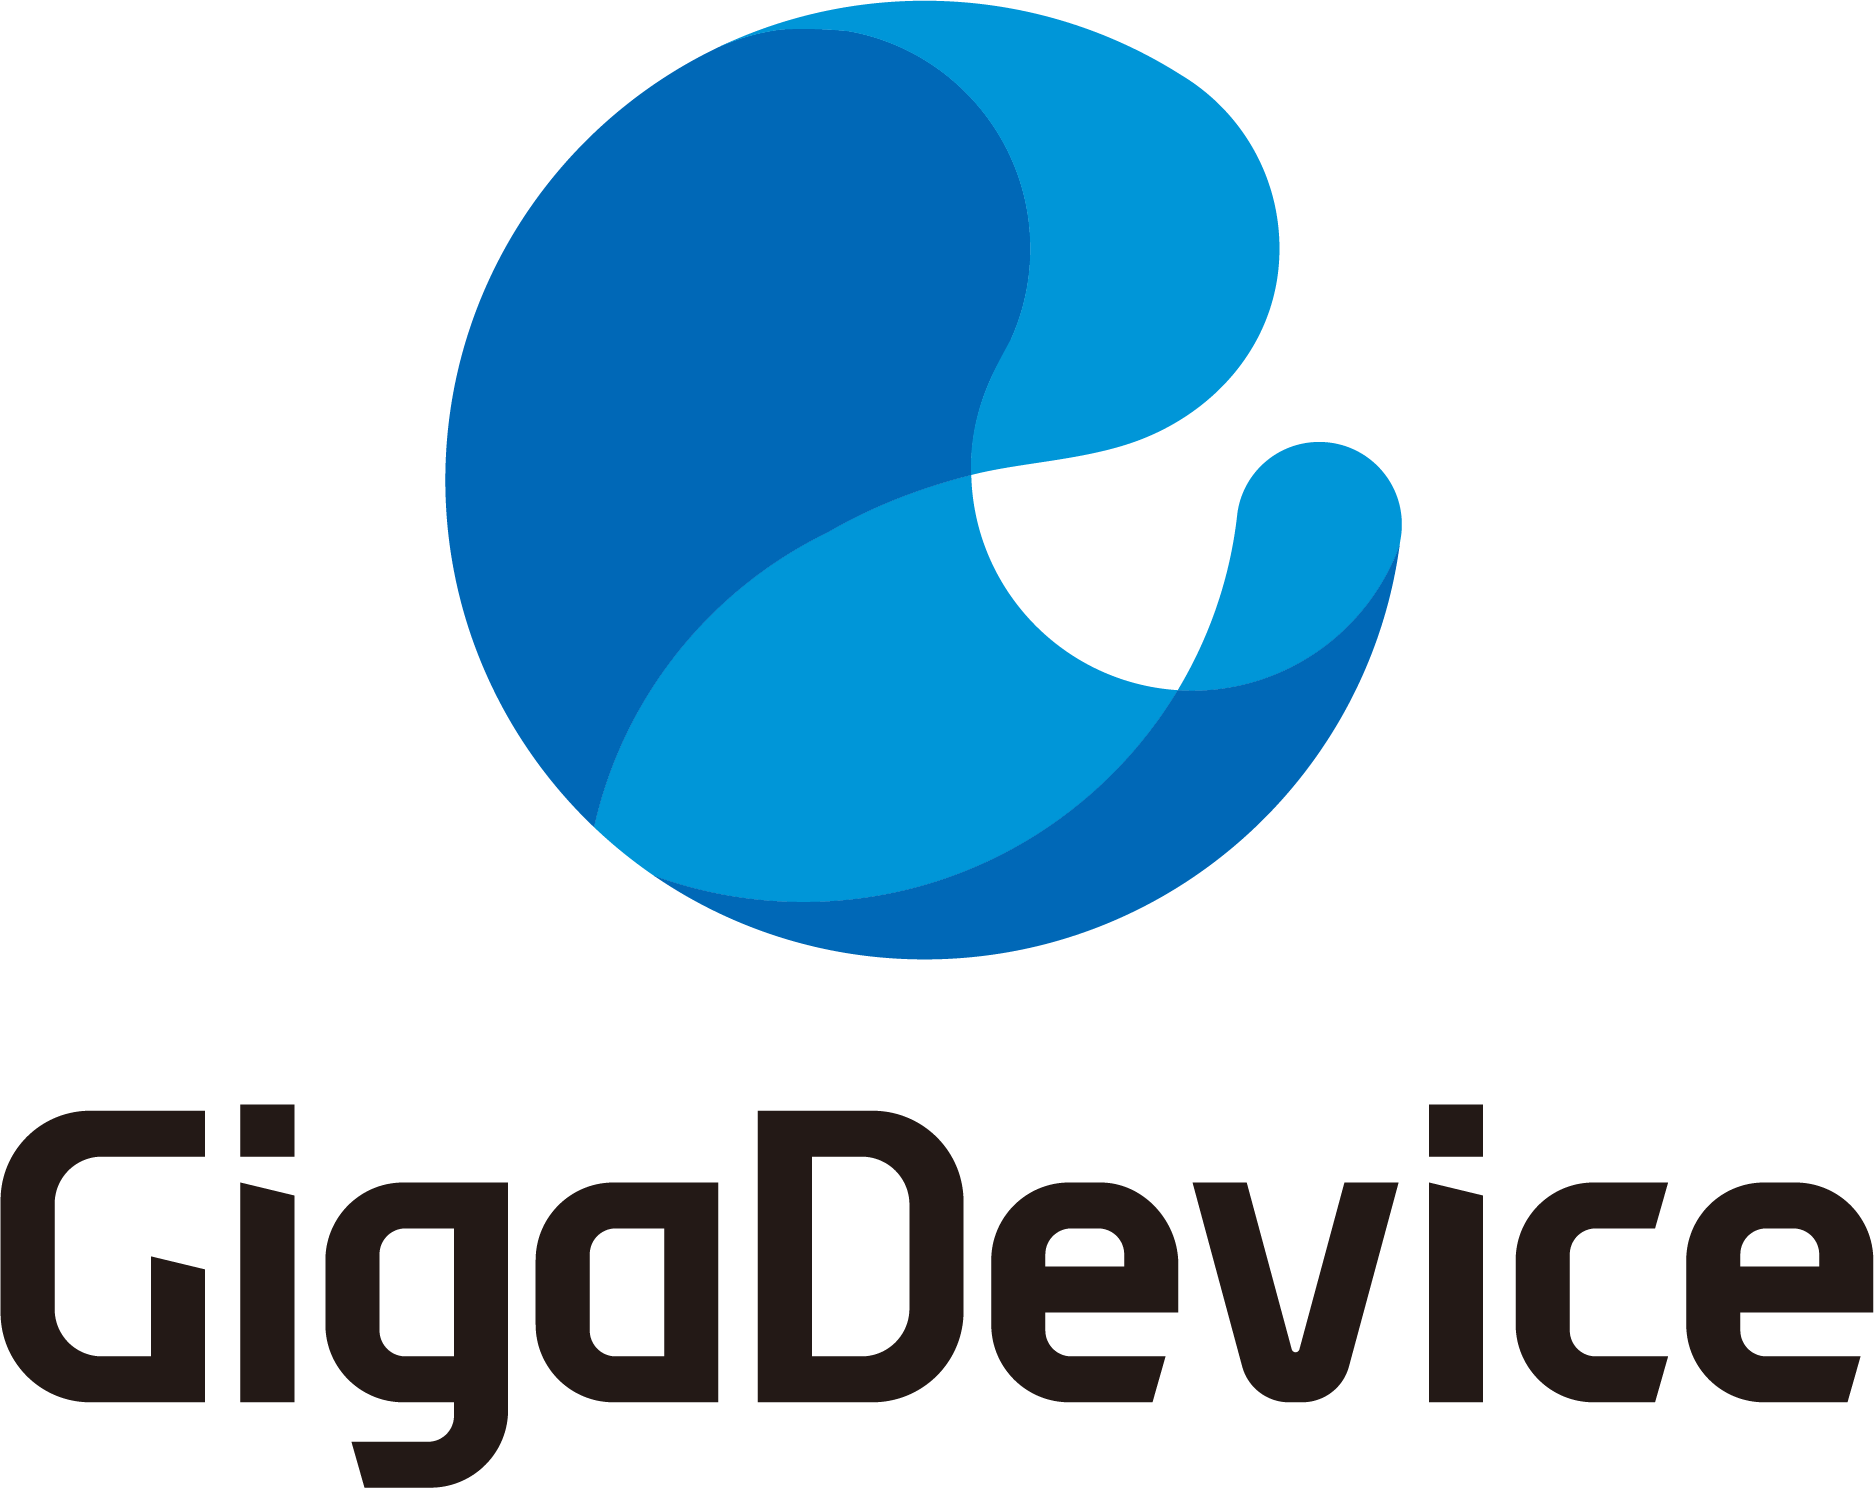 GigaDevice LOGO